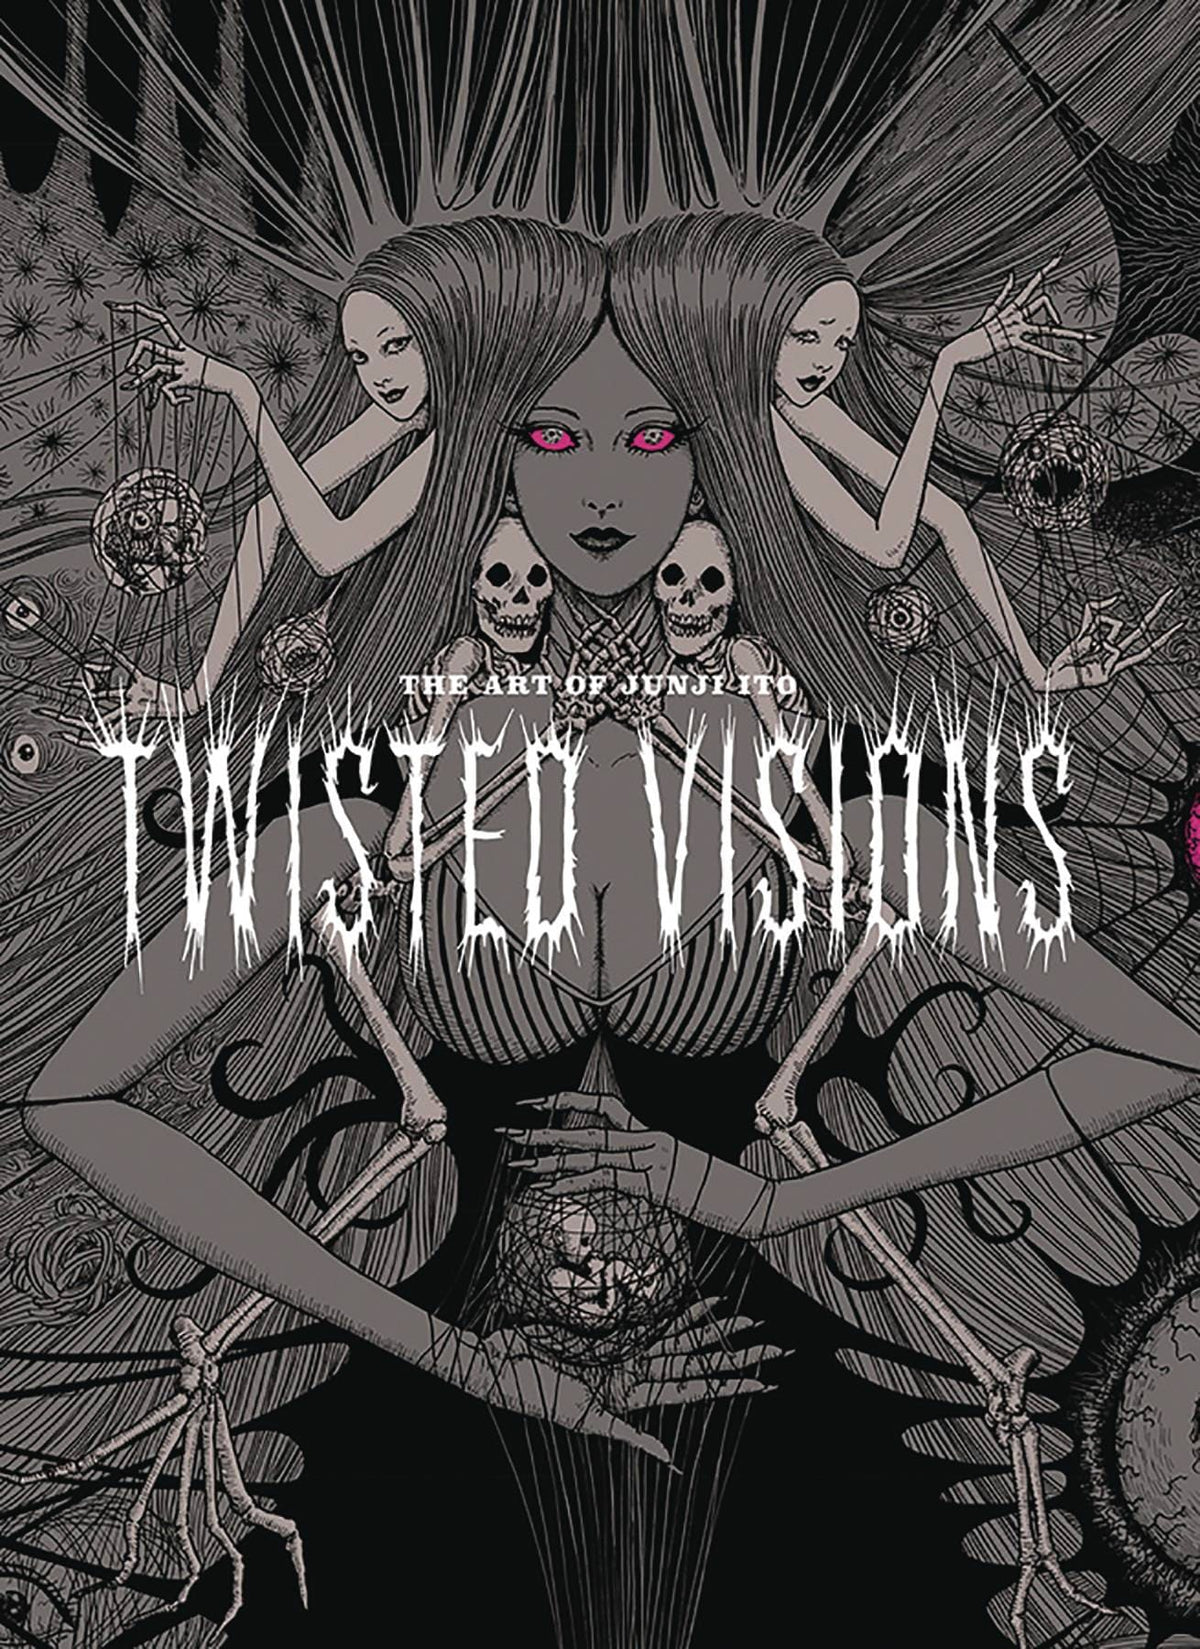 TWISTED VISIONS: ART OF JUNJI ITO - Third Eye